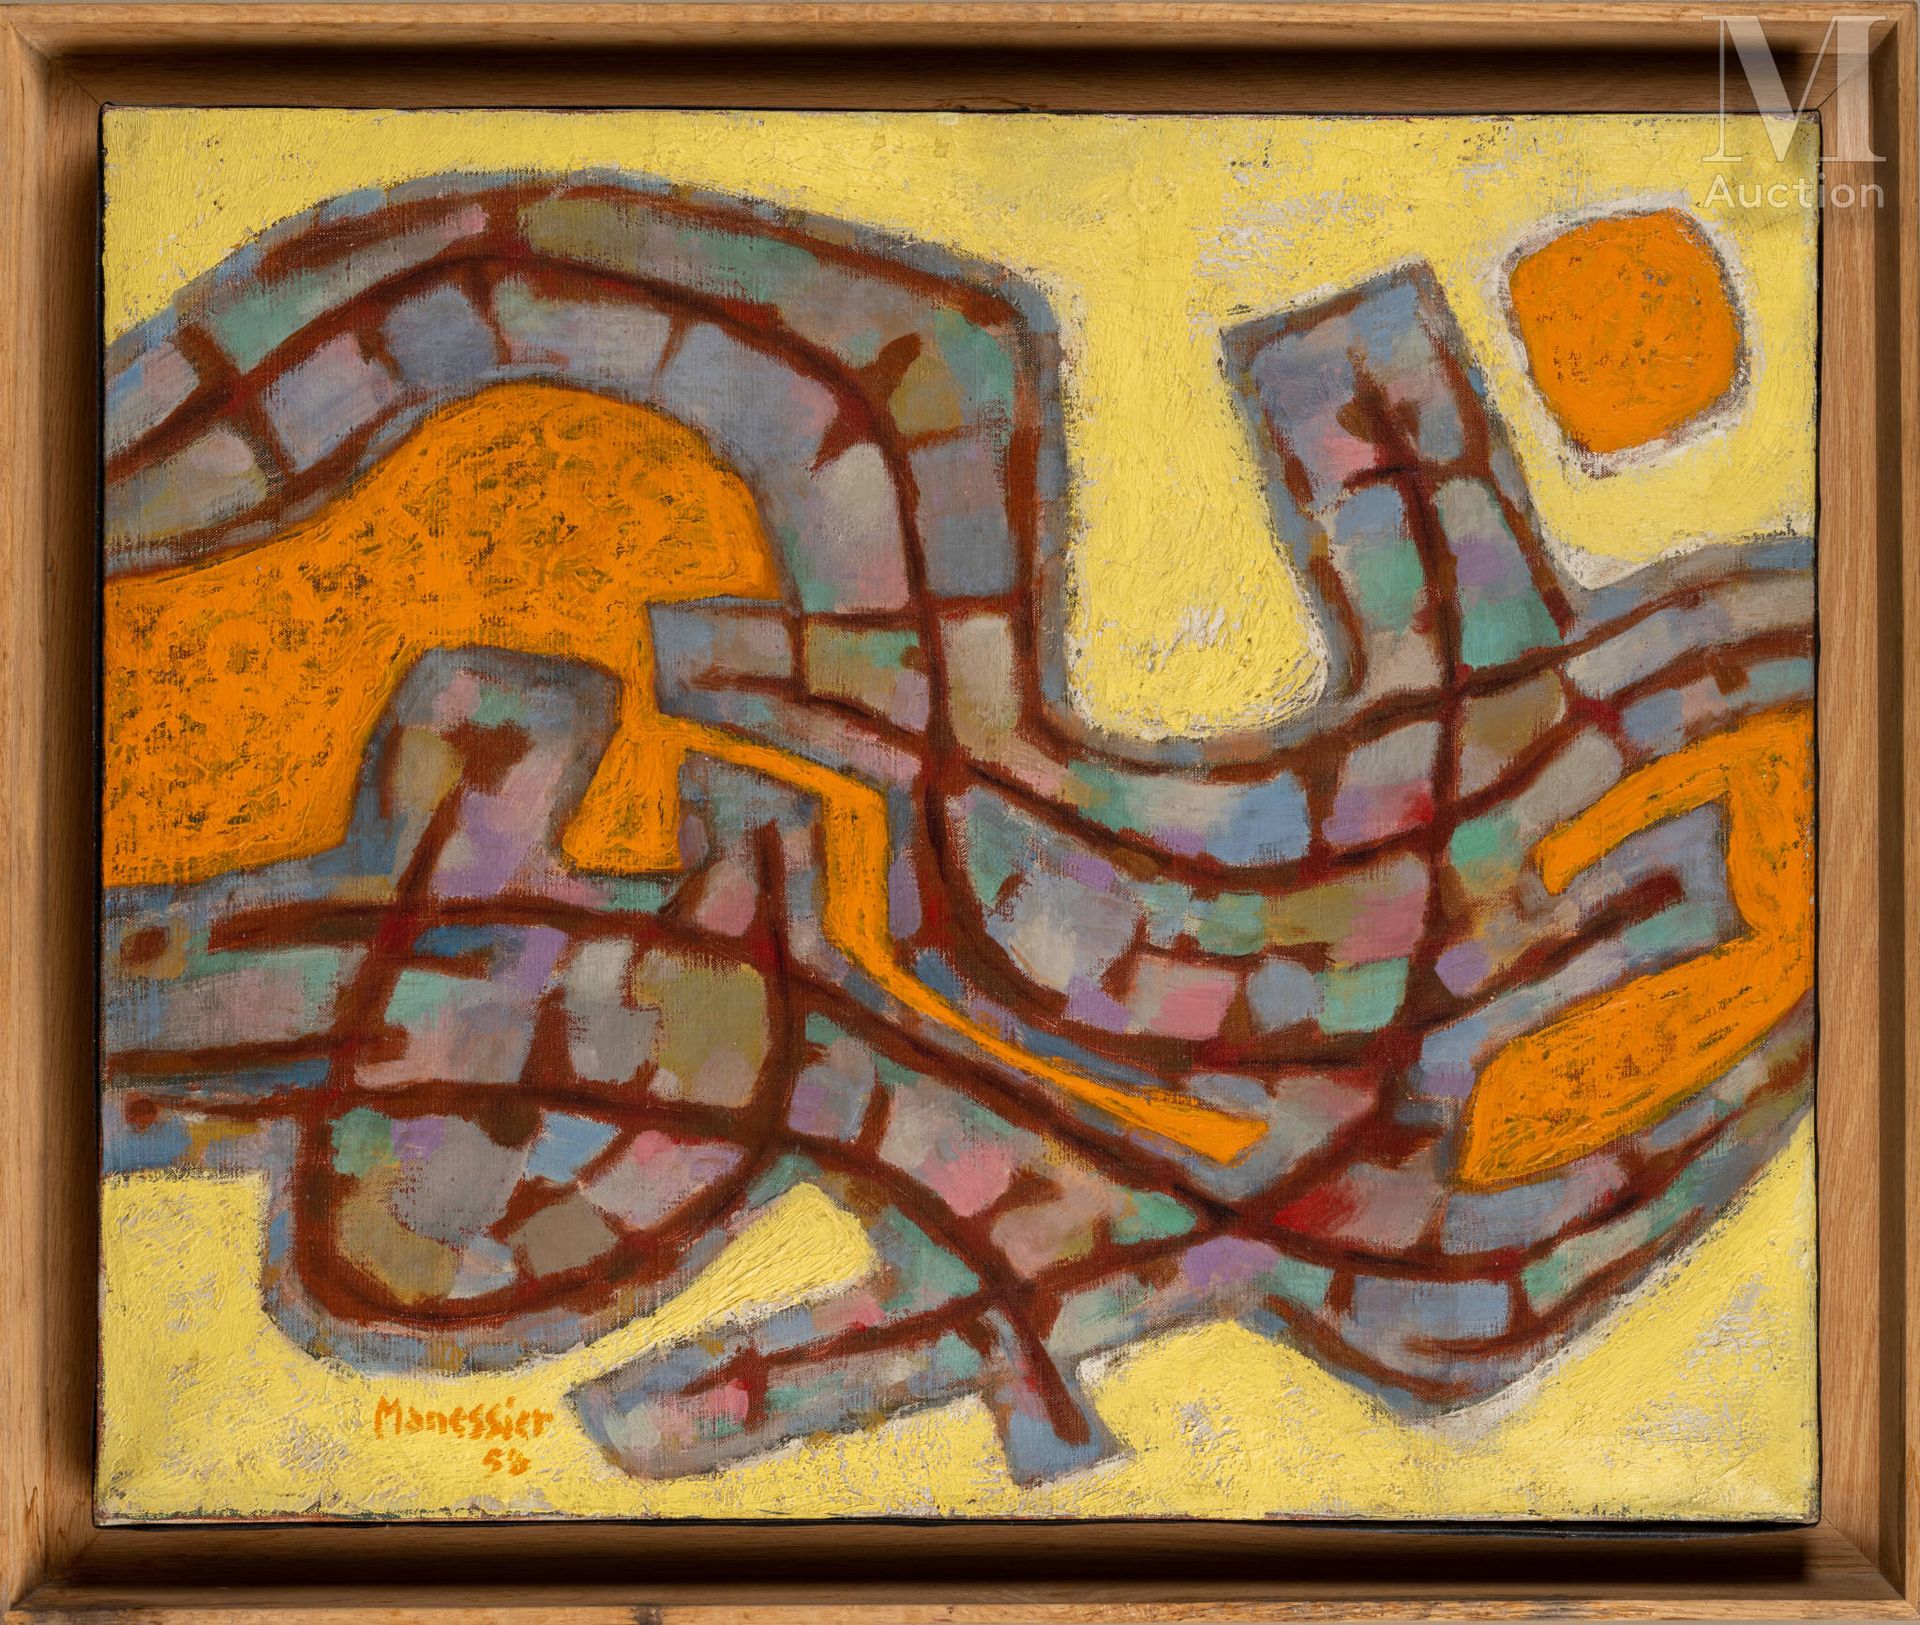 Alfred MANESSIER (1911-1993) 阳光》，1958年

布面油画，左下角有签名和日期

60 x 73 cm



出处 :

巴黎Et&hellip;